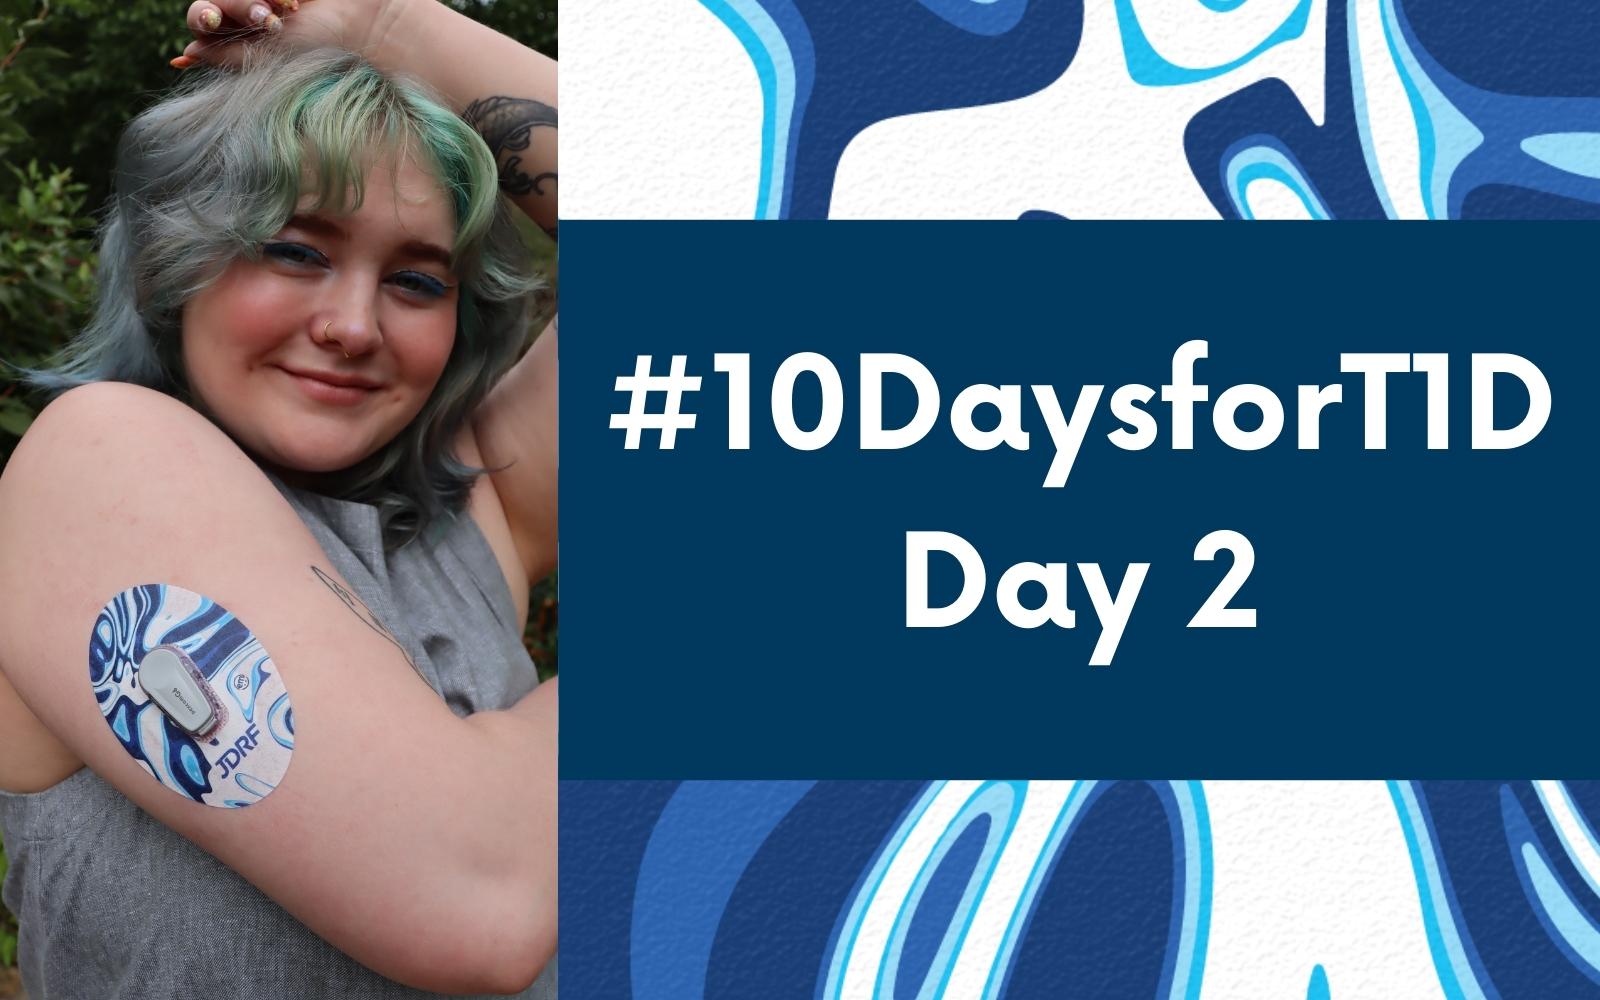 Day 2 - #10DaysforT1D Challenge